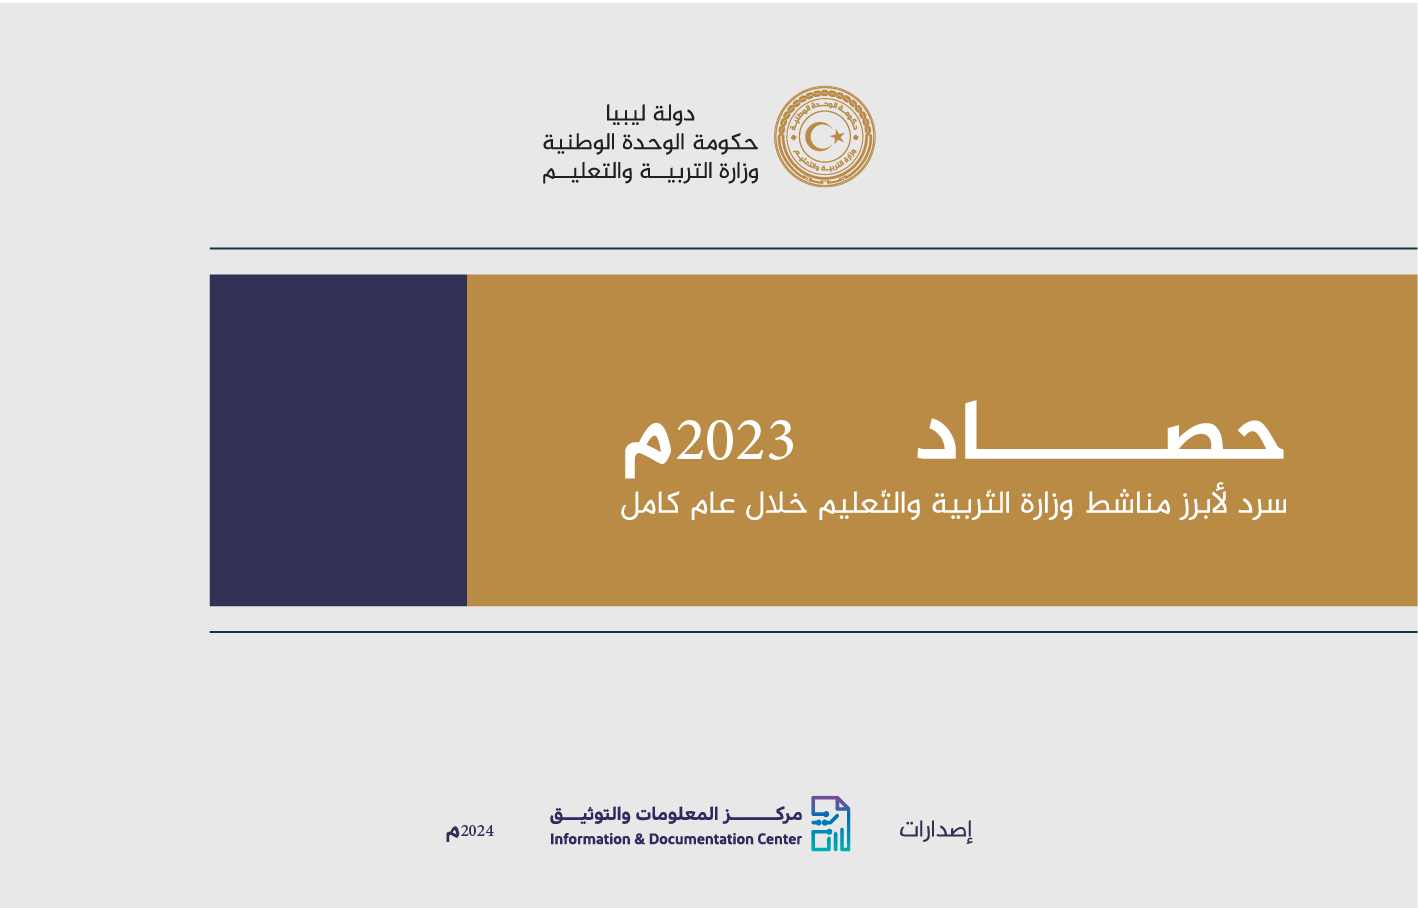 حصاد عام 2023 لوزارة التربية والتعليم في ليبيا